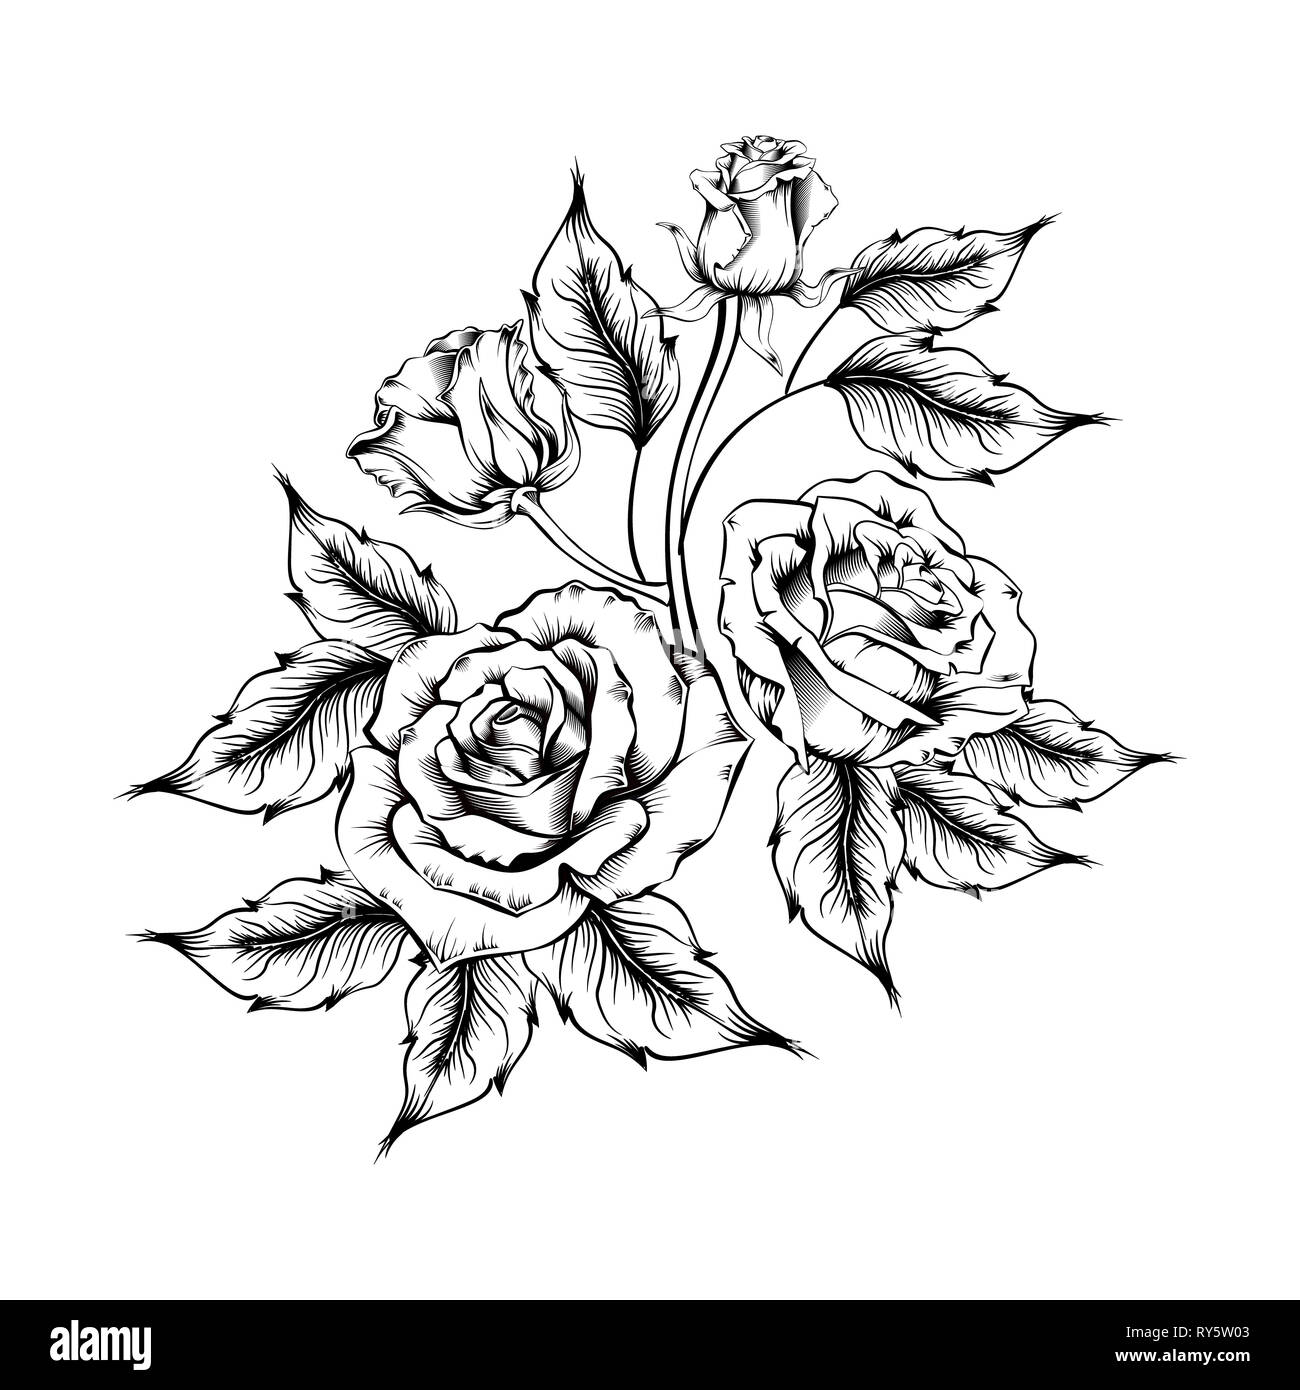 Rose Tattoo. Silhouette von Rosen und Blätter auf einem weißen Hintergrund.  Linework Stil. Muster der Rosen Stockfotografie - Alamy